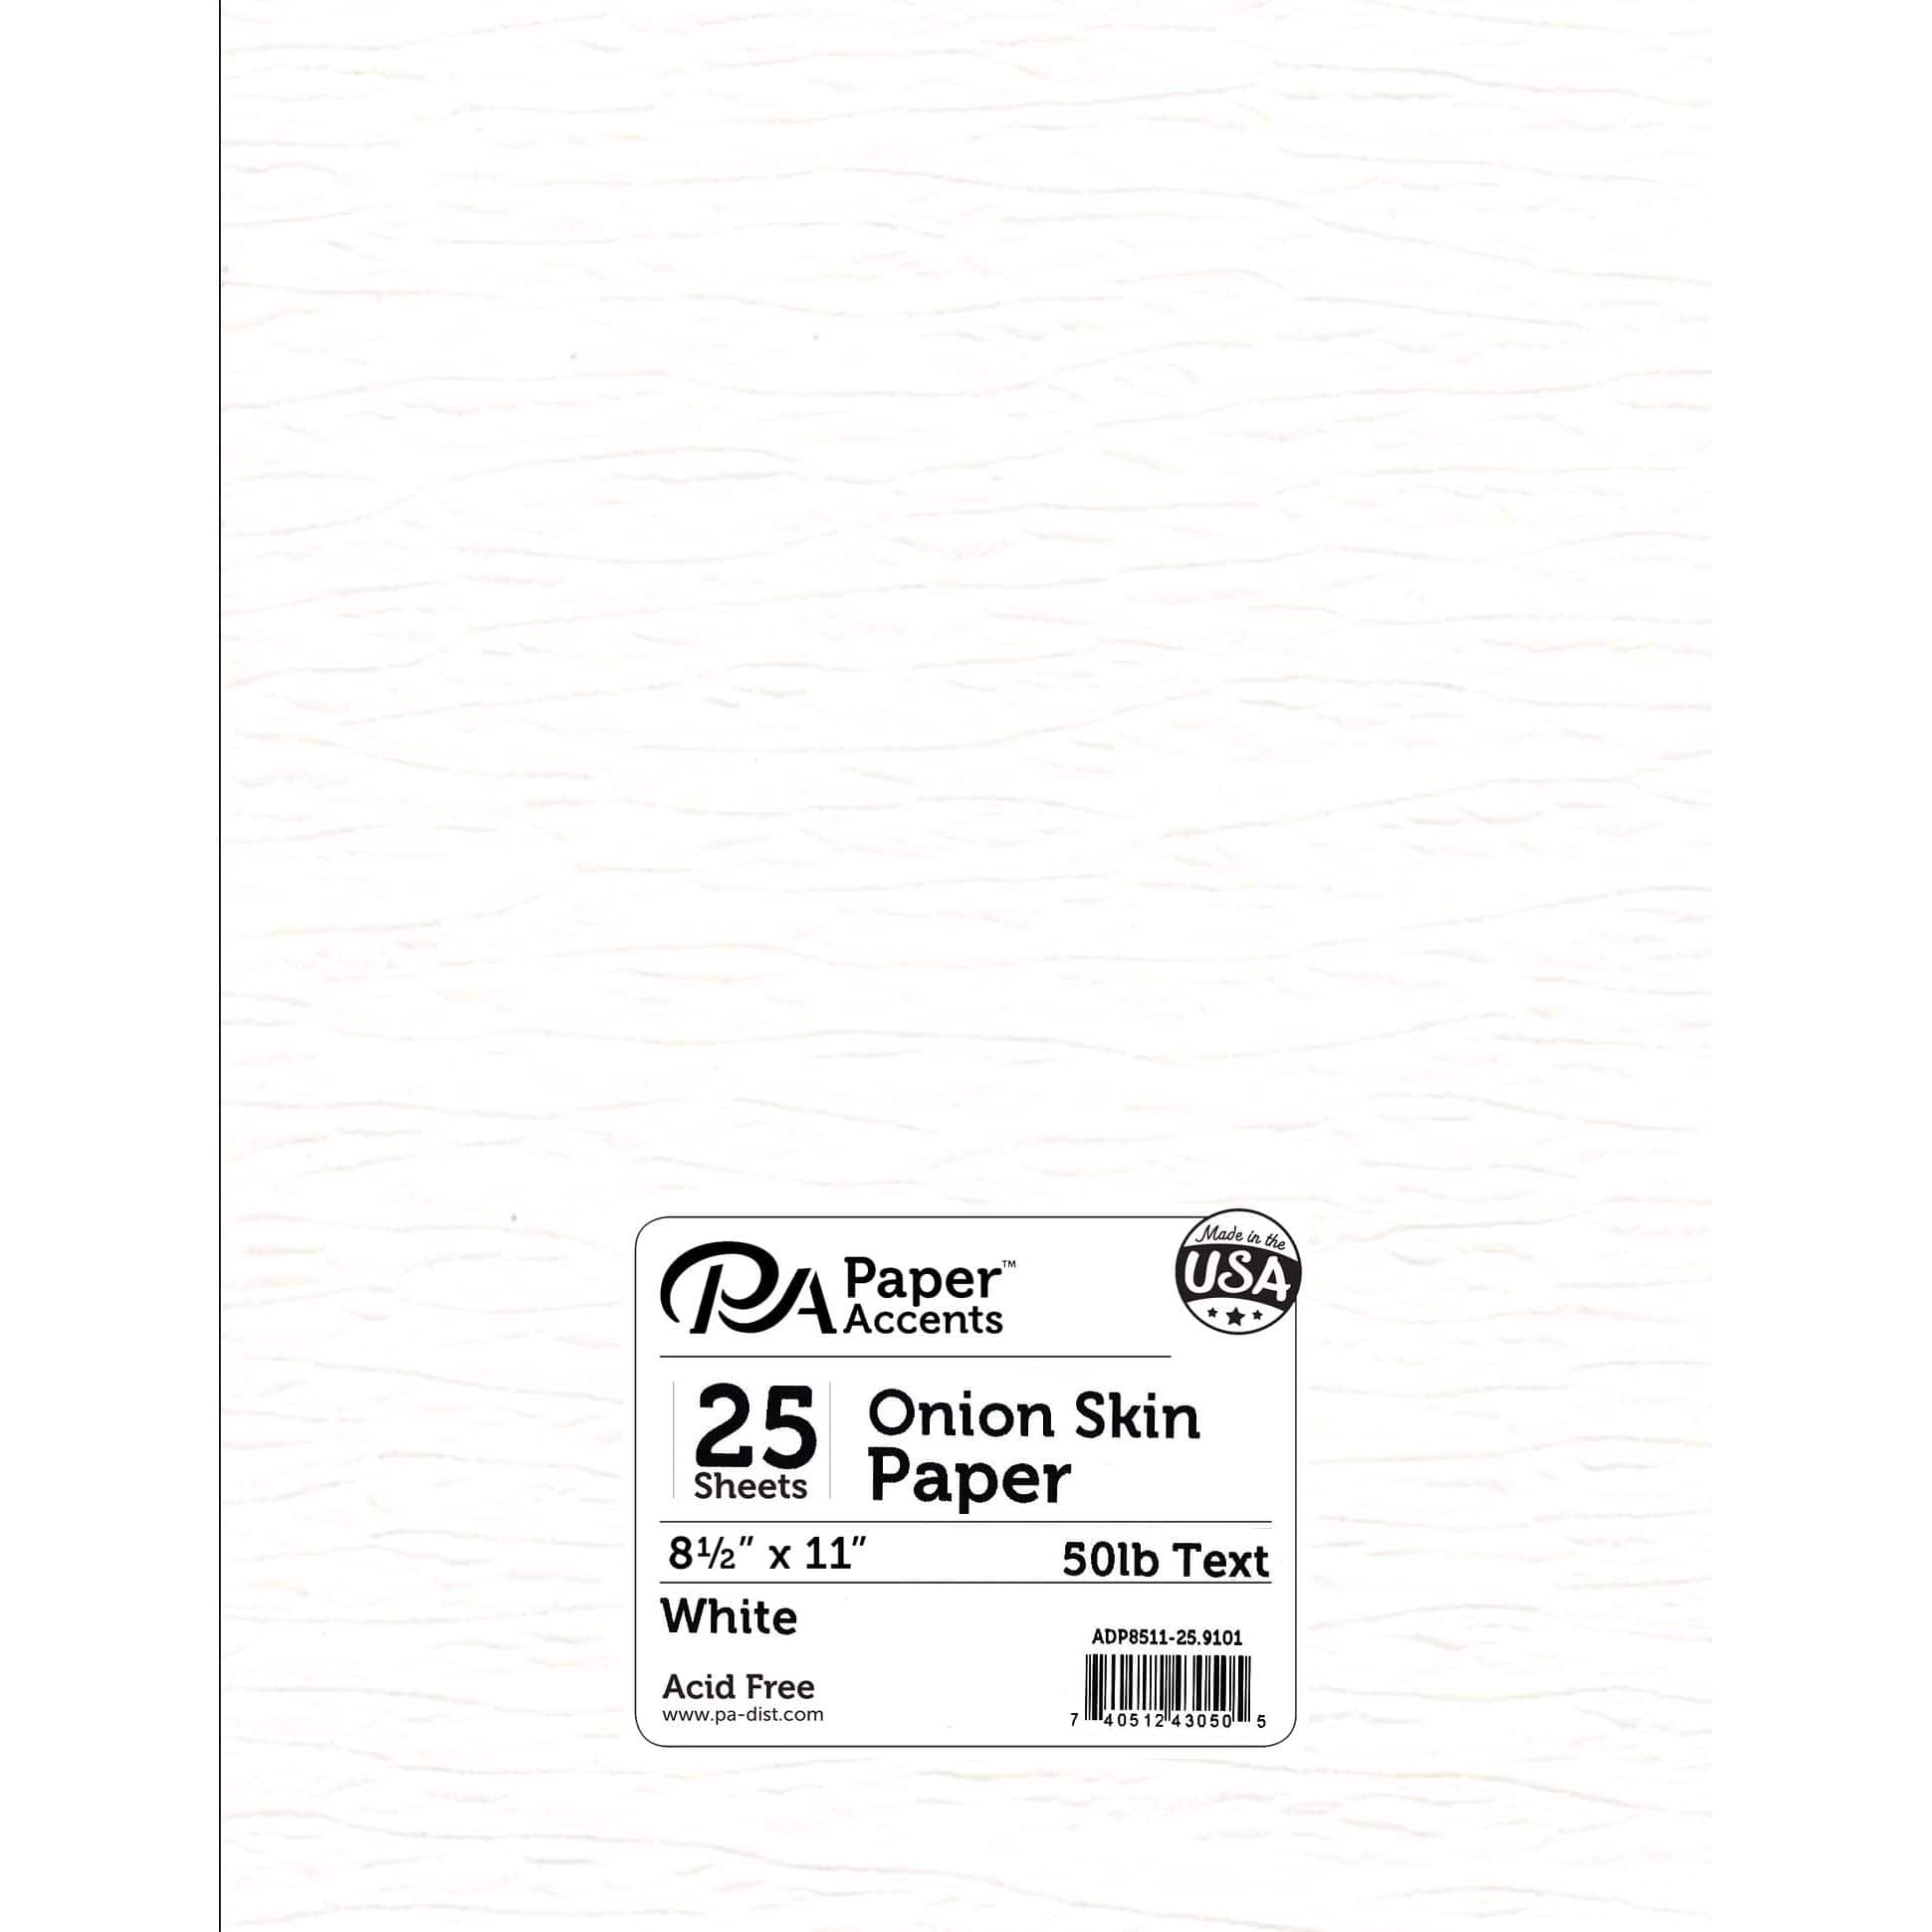 Where is Onion Skin Paper used? - A Kağıt